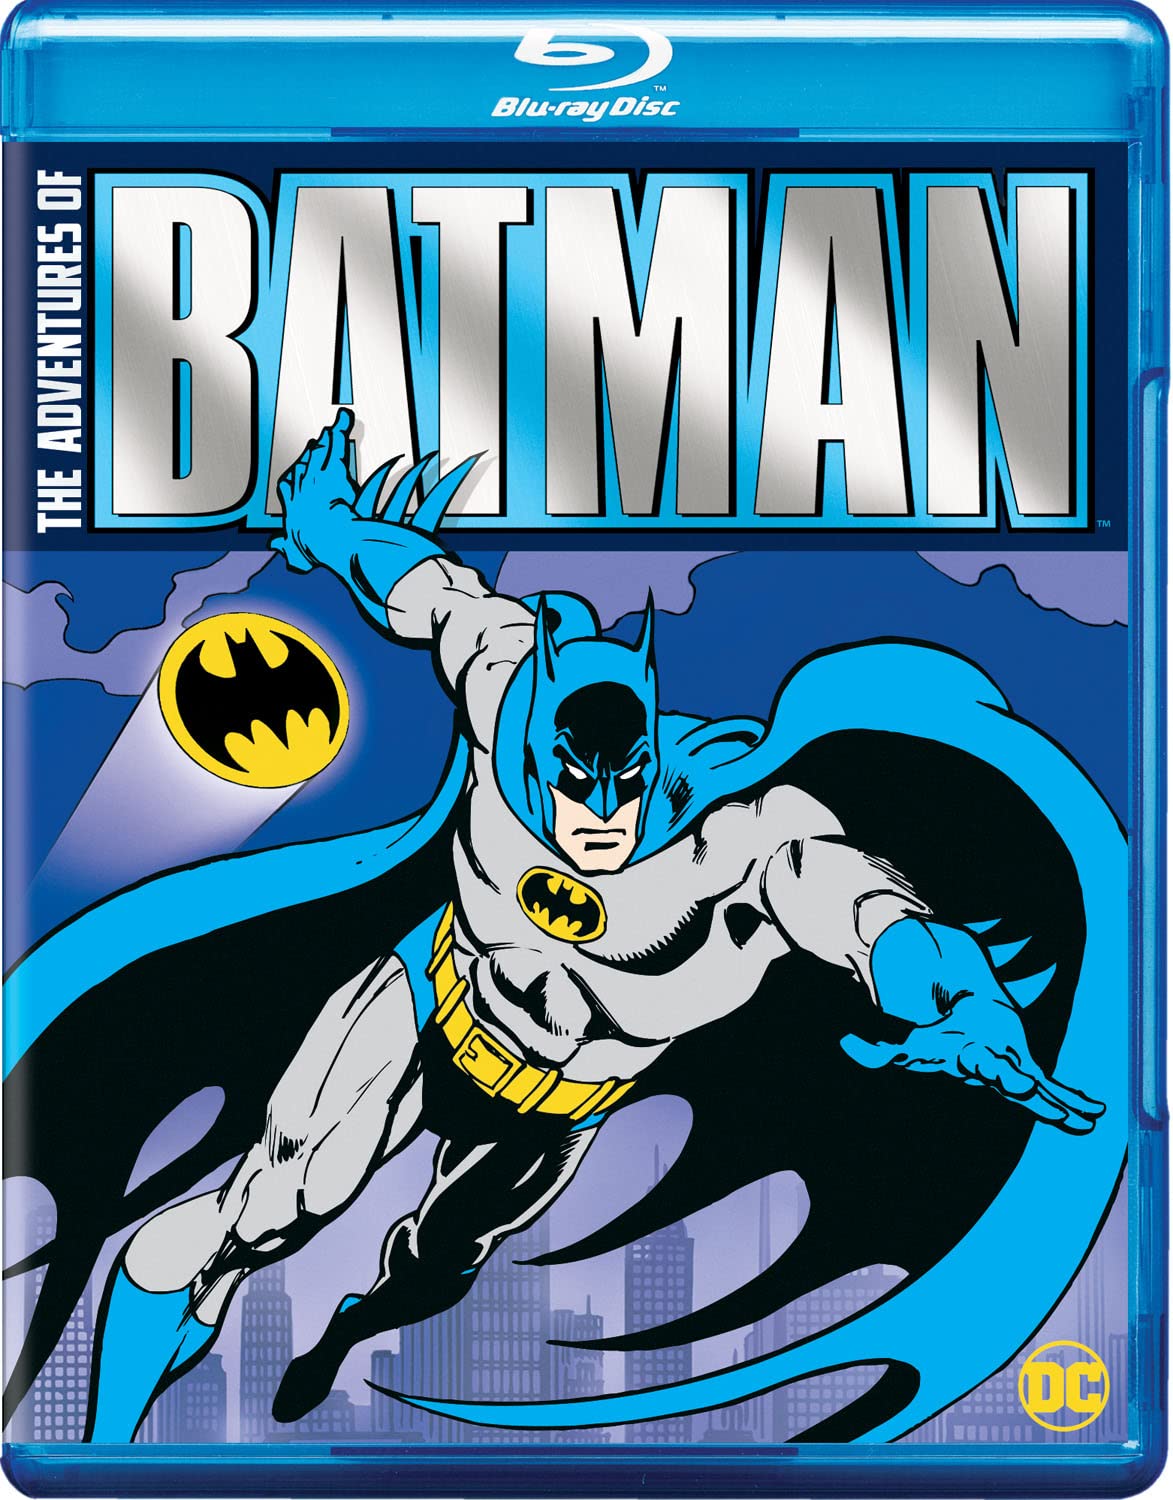 Adventures of Batman Animated Series - Amazon